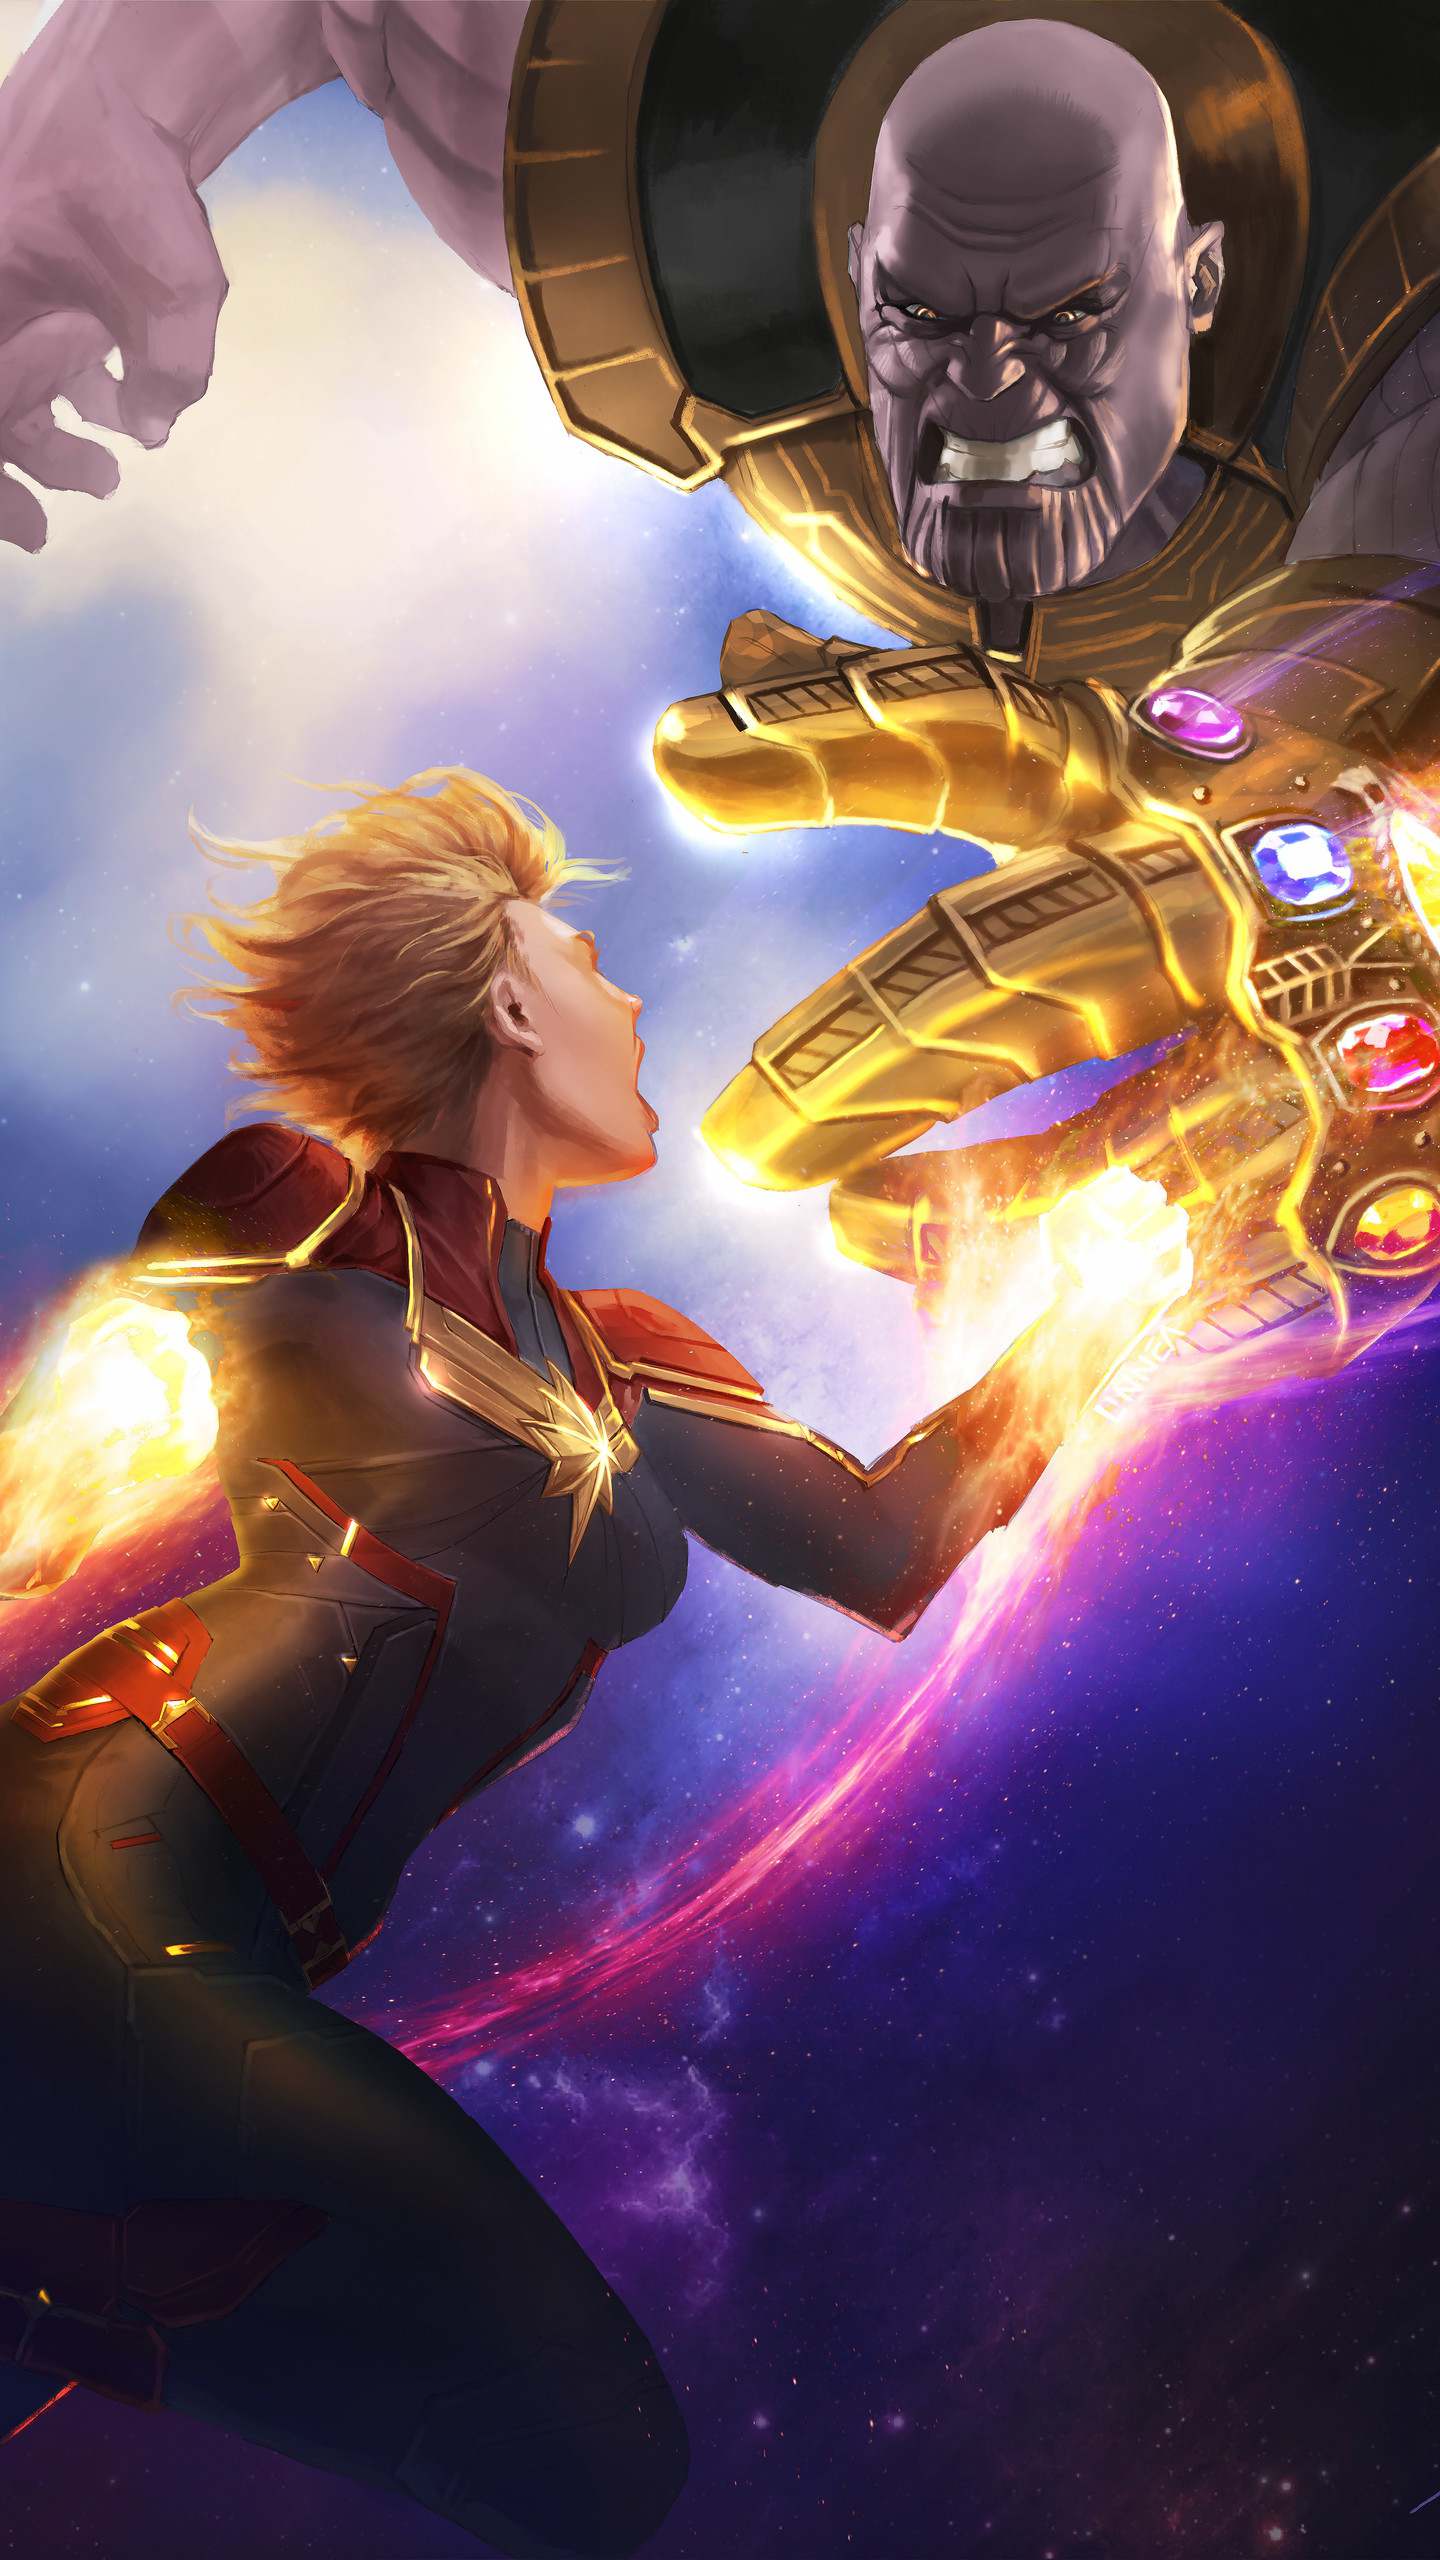 Thanos Vs Captain Marvel Fight Avengers Endgame Wallpaper Wallpaper, iPhone Wallpaper